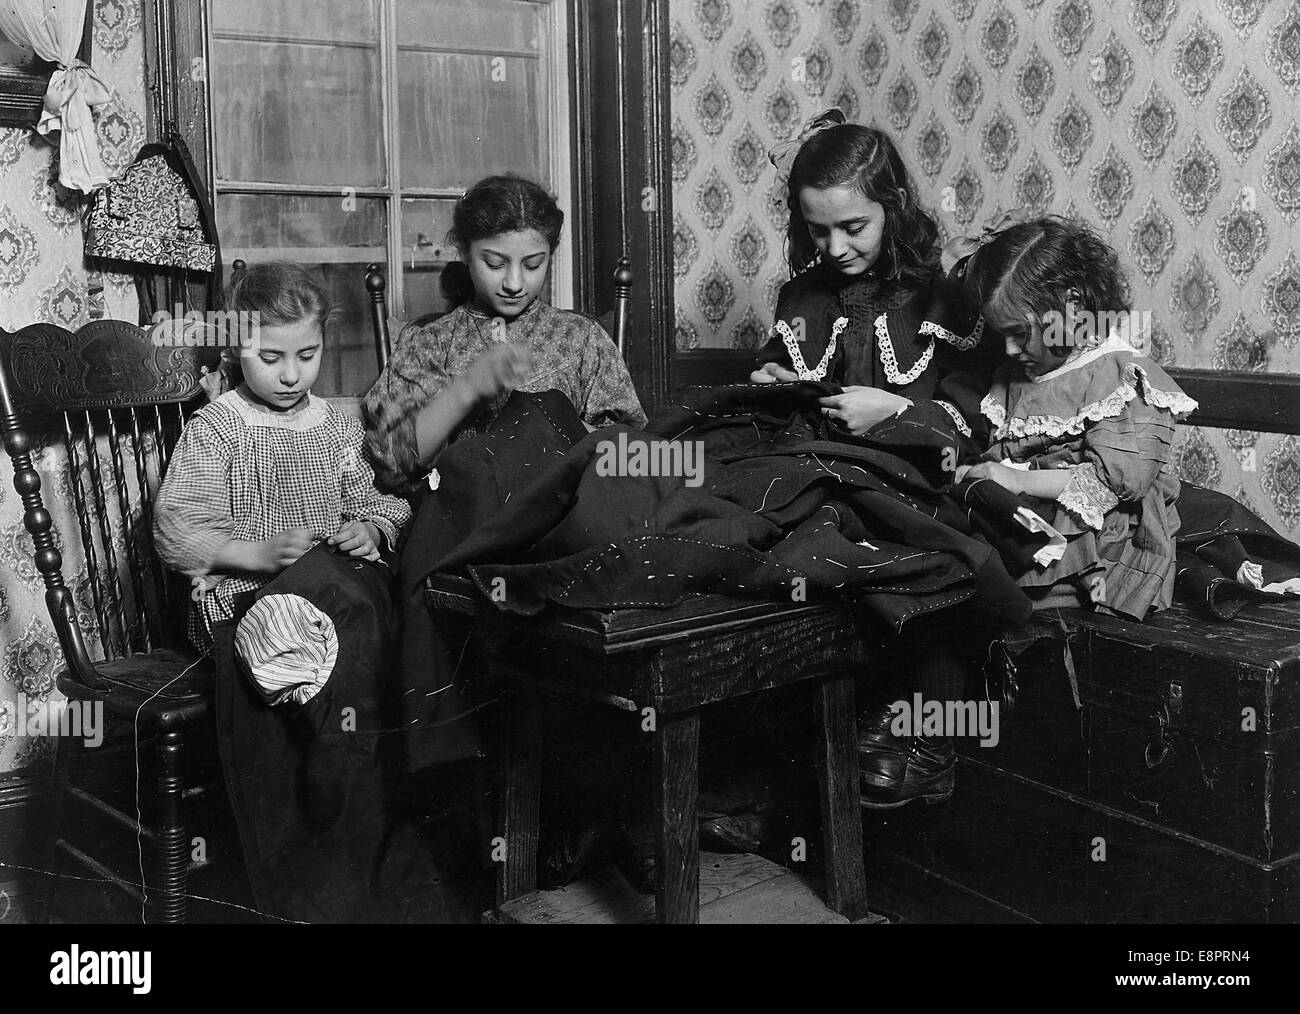 Les travailleurs de l'industrie du vêtement à New York City. Janvier 1910 Banque D'Images